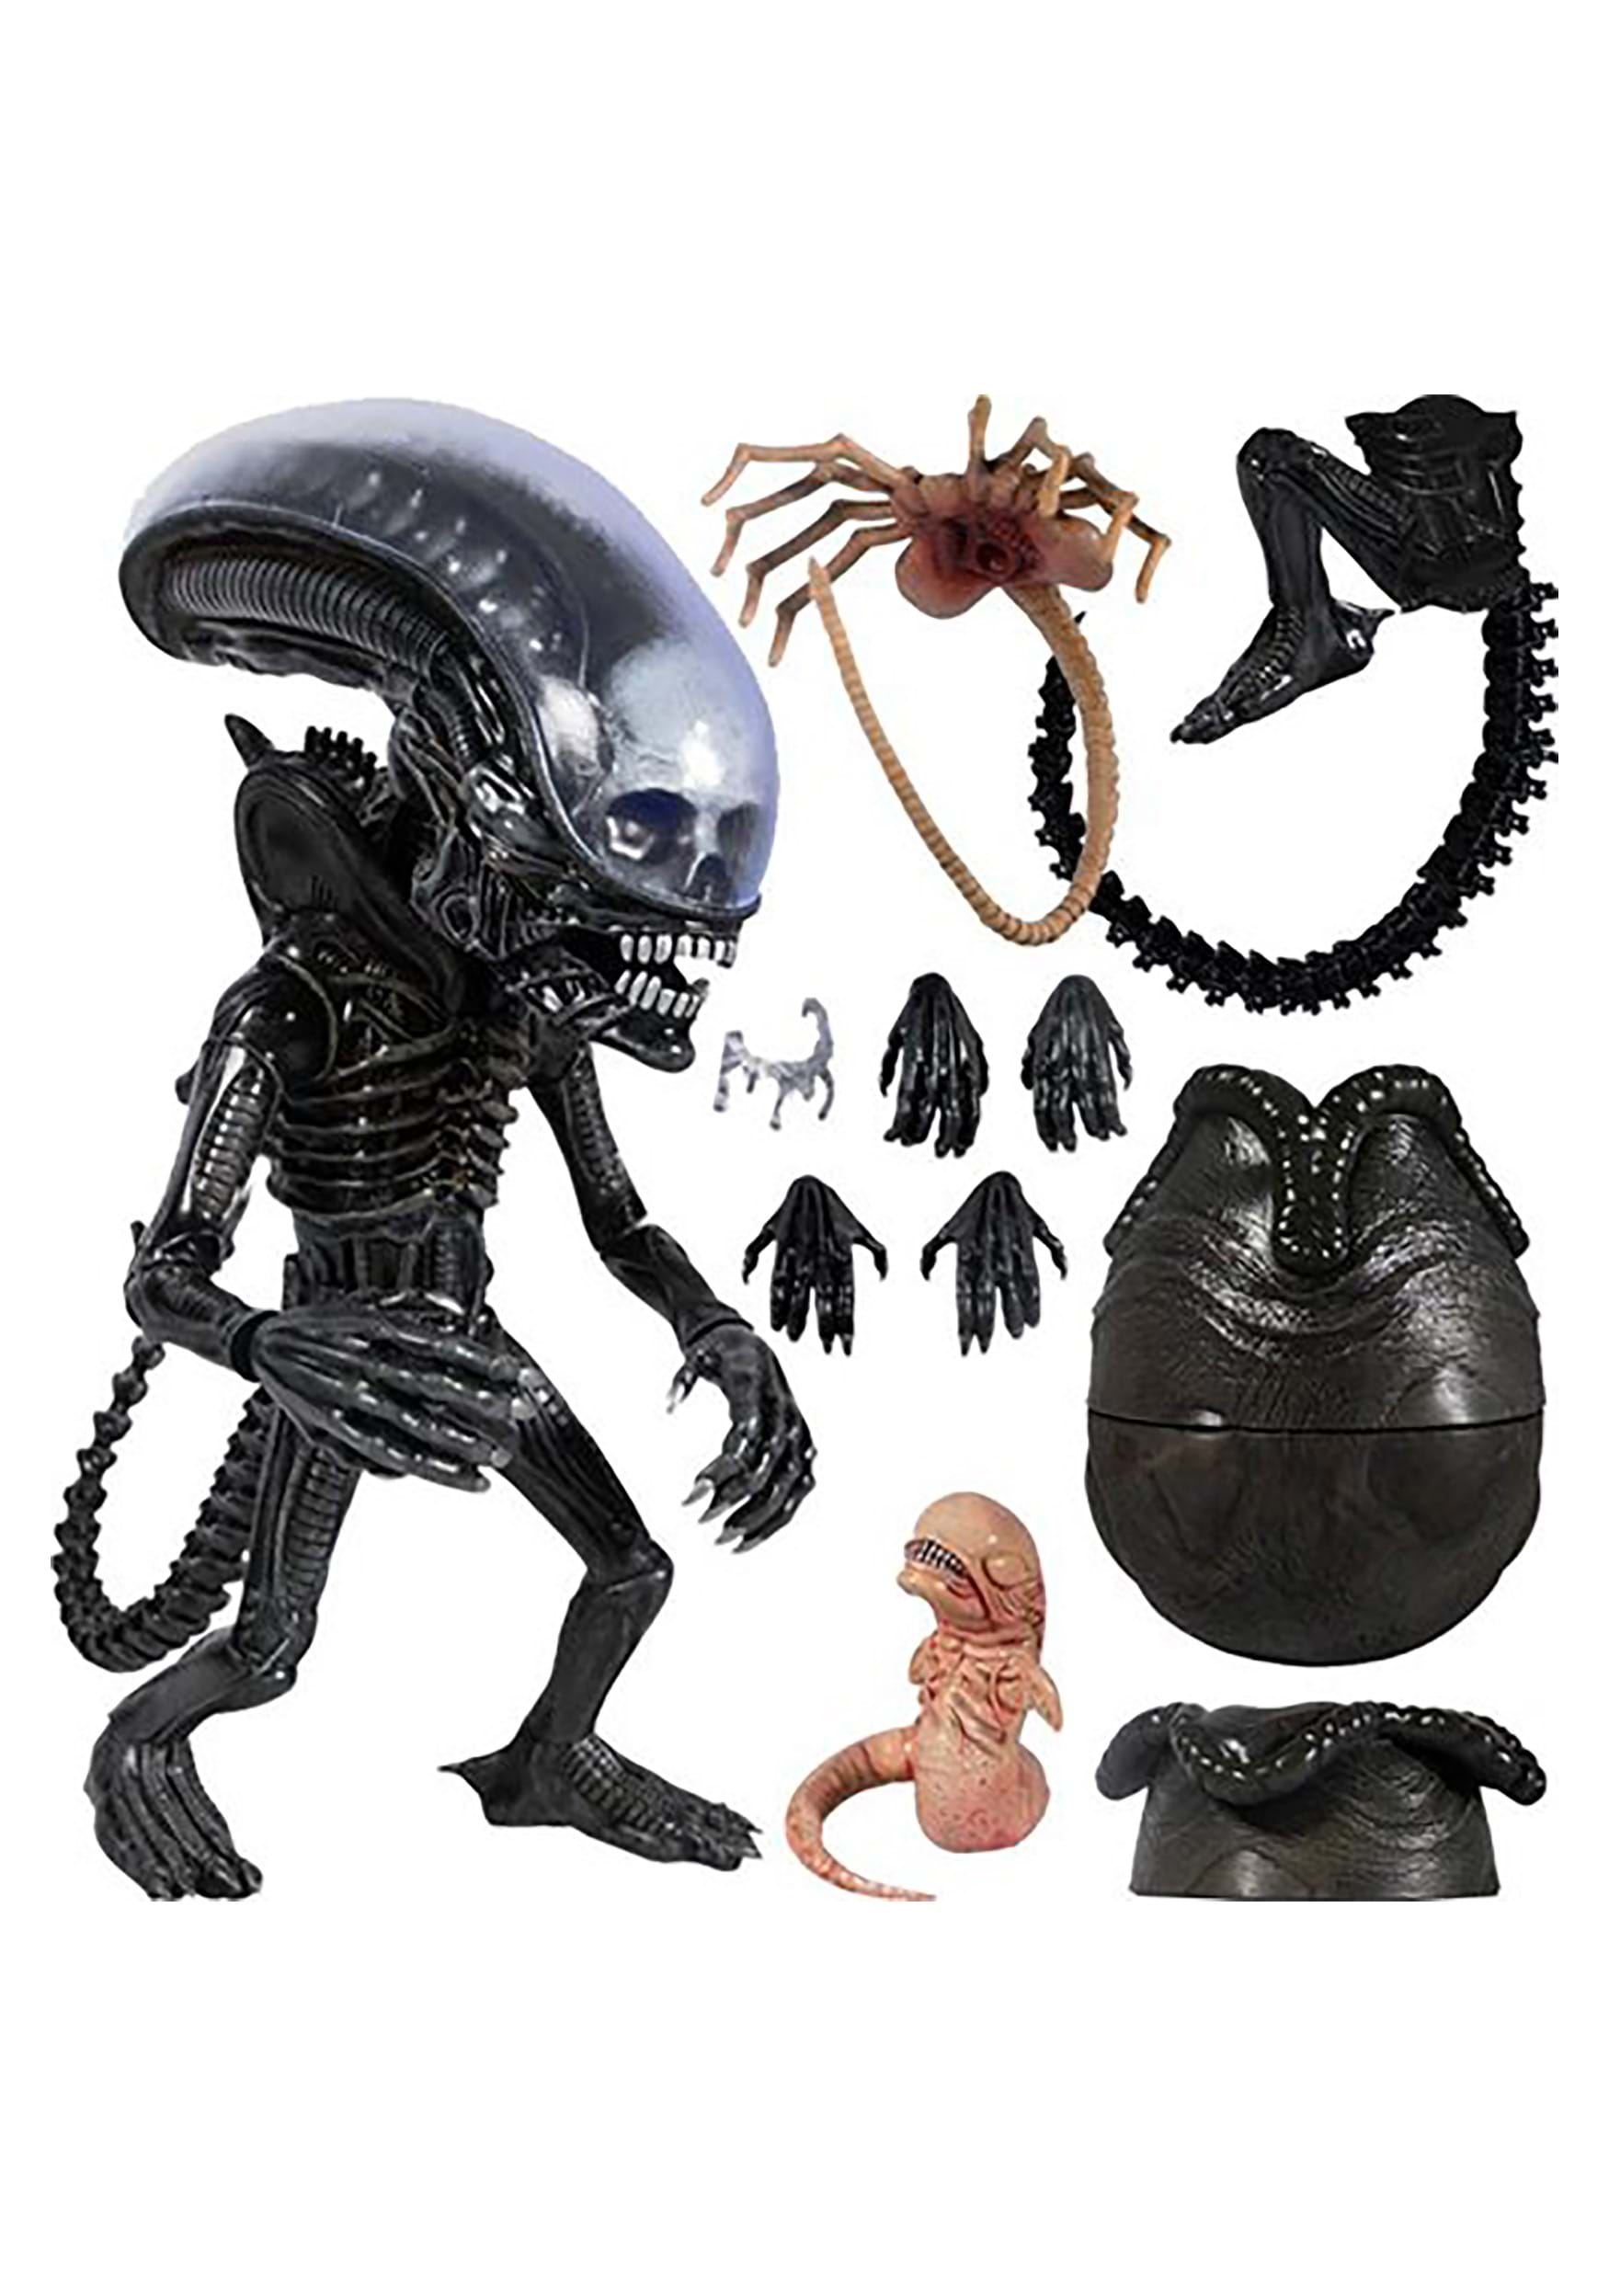 Deluxe Mezco Designer Series Alien Figure